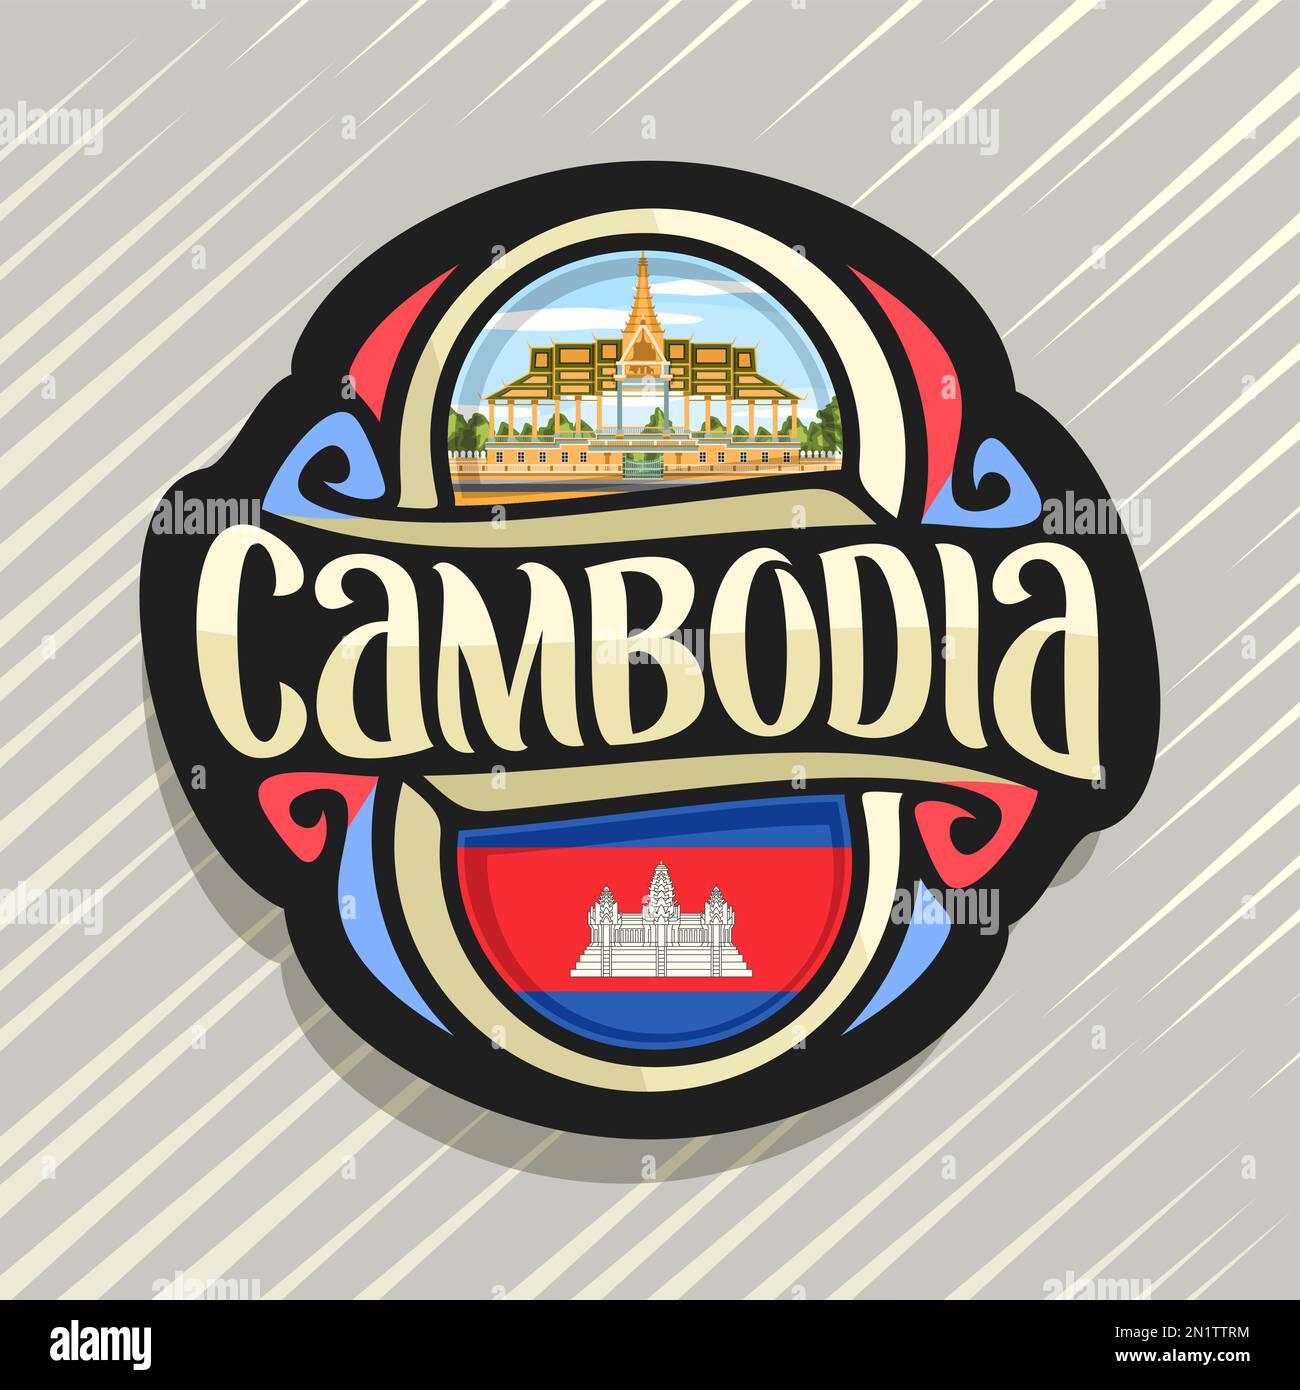 Logo Vector pour Royaume du Cambodge, aimant frigo avec drapeau de l'État cambodgien, pinceau original typeface pour mot cambodge et national symbole cambodgien Illustration de Vecteur